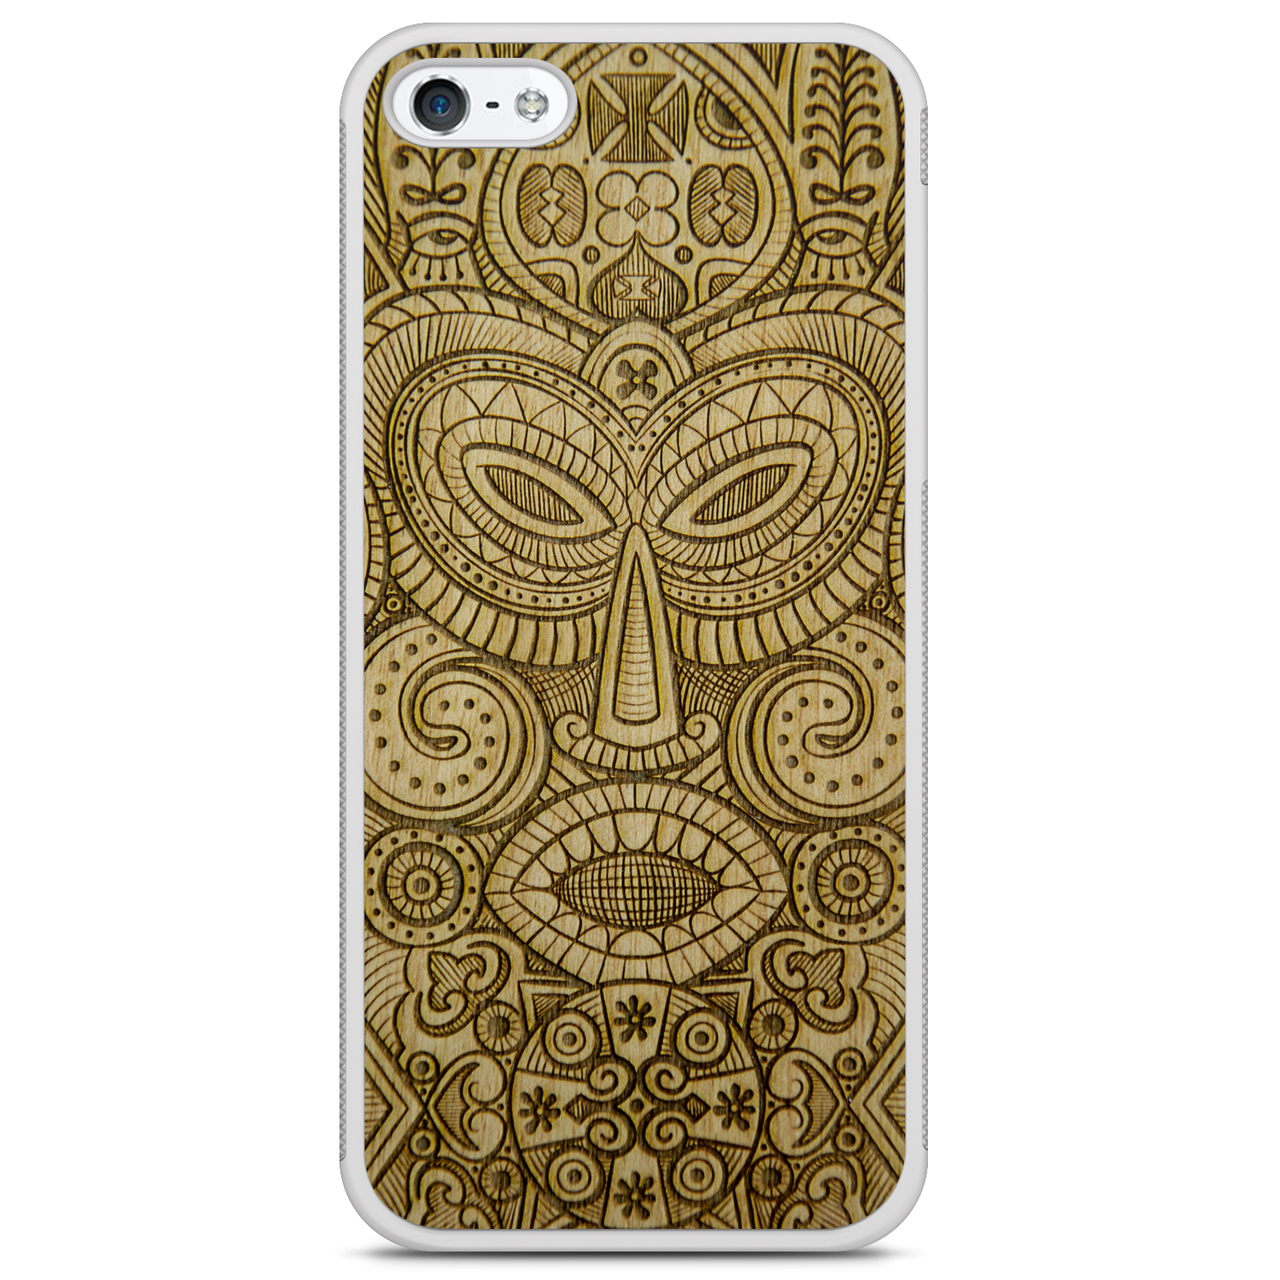 Funda para teléfono de madera blanca con máscara tribal tribal para iPhone 5